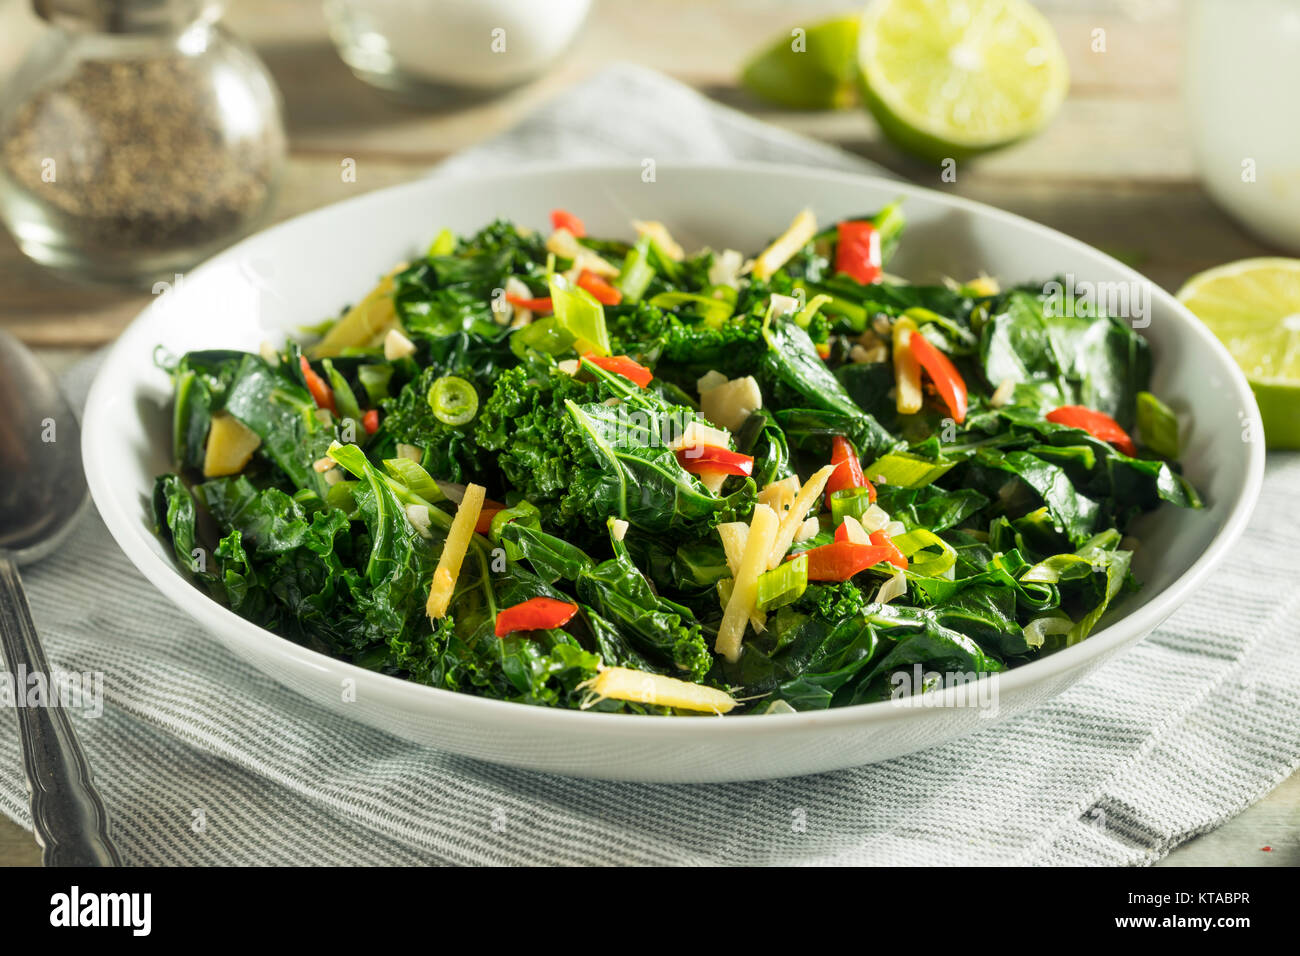 https://c8.alamy.com/comp/KTABPR/homemade-organic-green-collard-greens-with-pepper-and-ginger-KTABPR.jpg